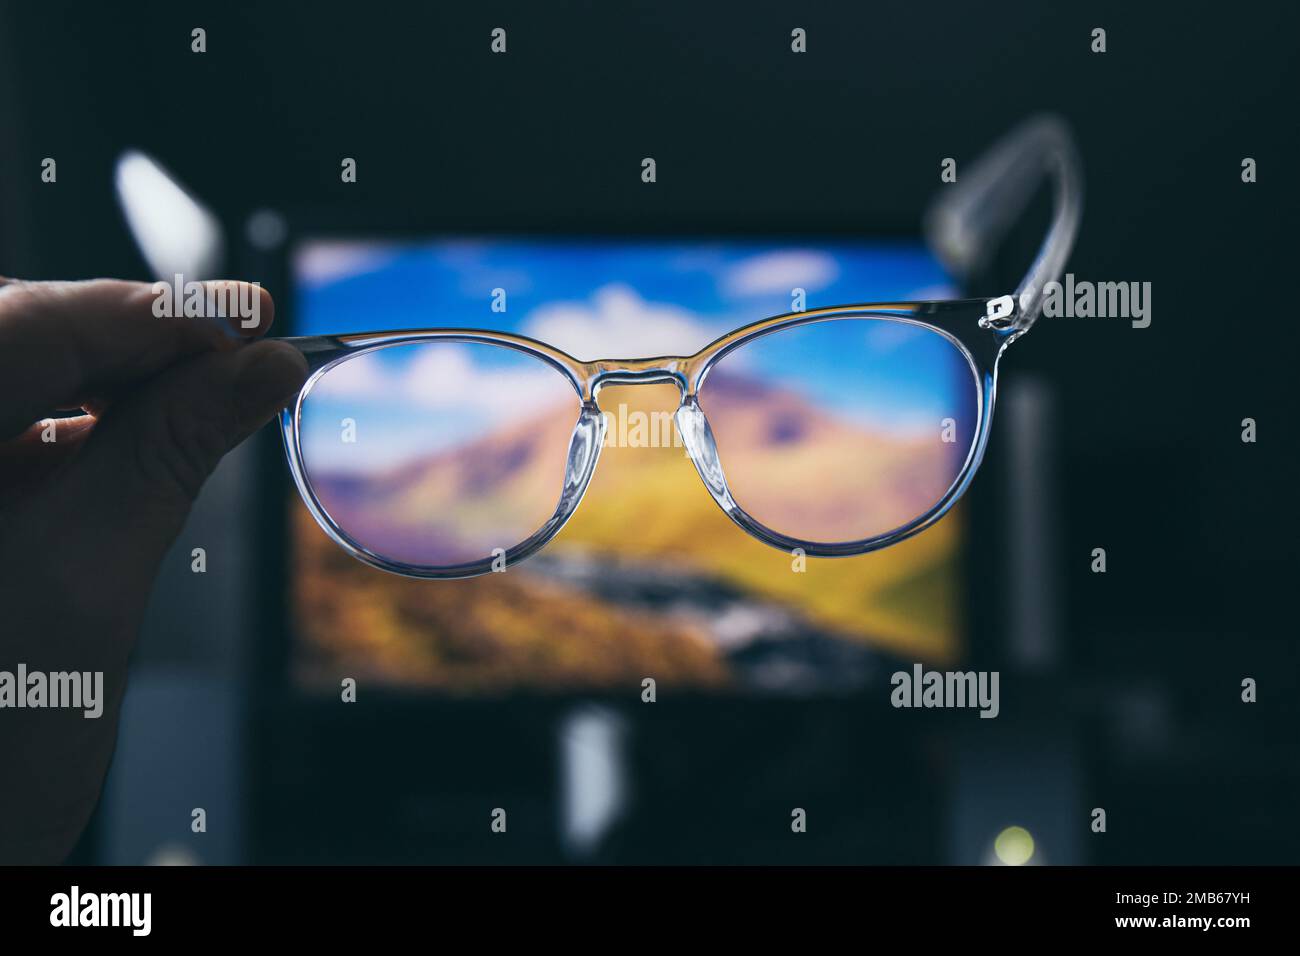 Selektiver Fokus auf transparente, klare, blaue Computerbrillen und einen Computerbildschirm, der im Hintergrund zu Hause oder im Büro leuchtet. Blaue Lichtbrille. Stockfoto